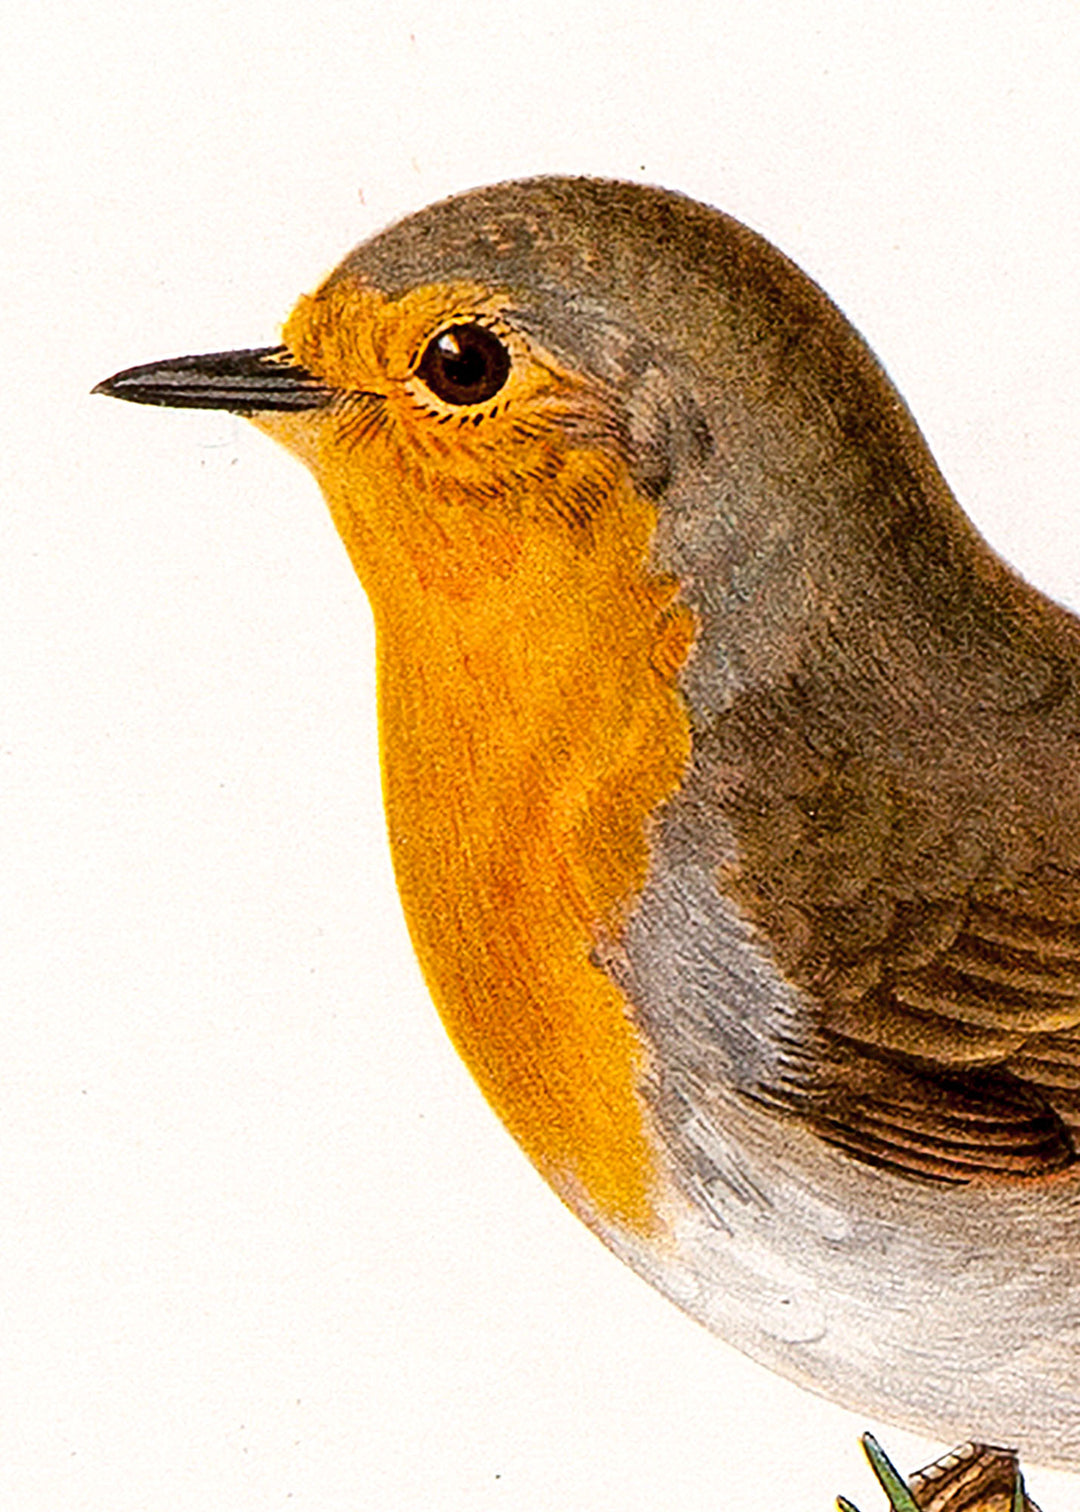 Fågeln Rödhake på klassisk vintage poster/affisch